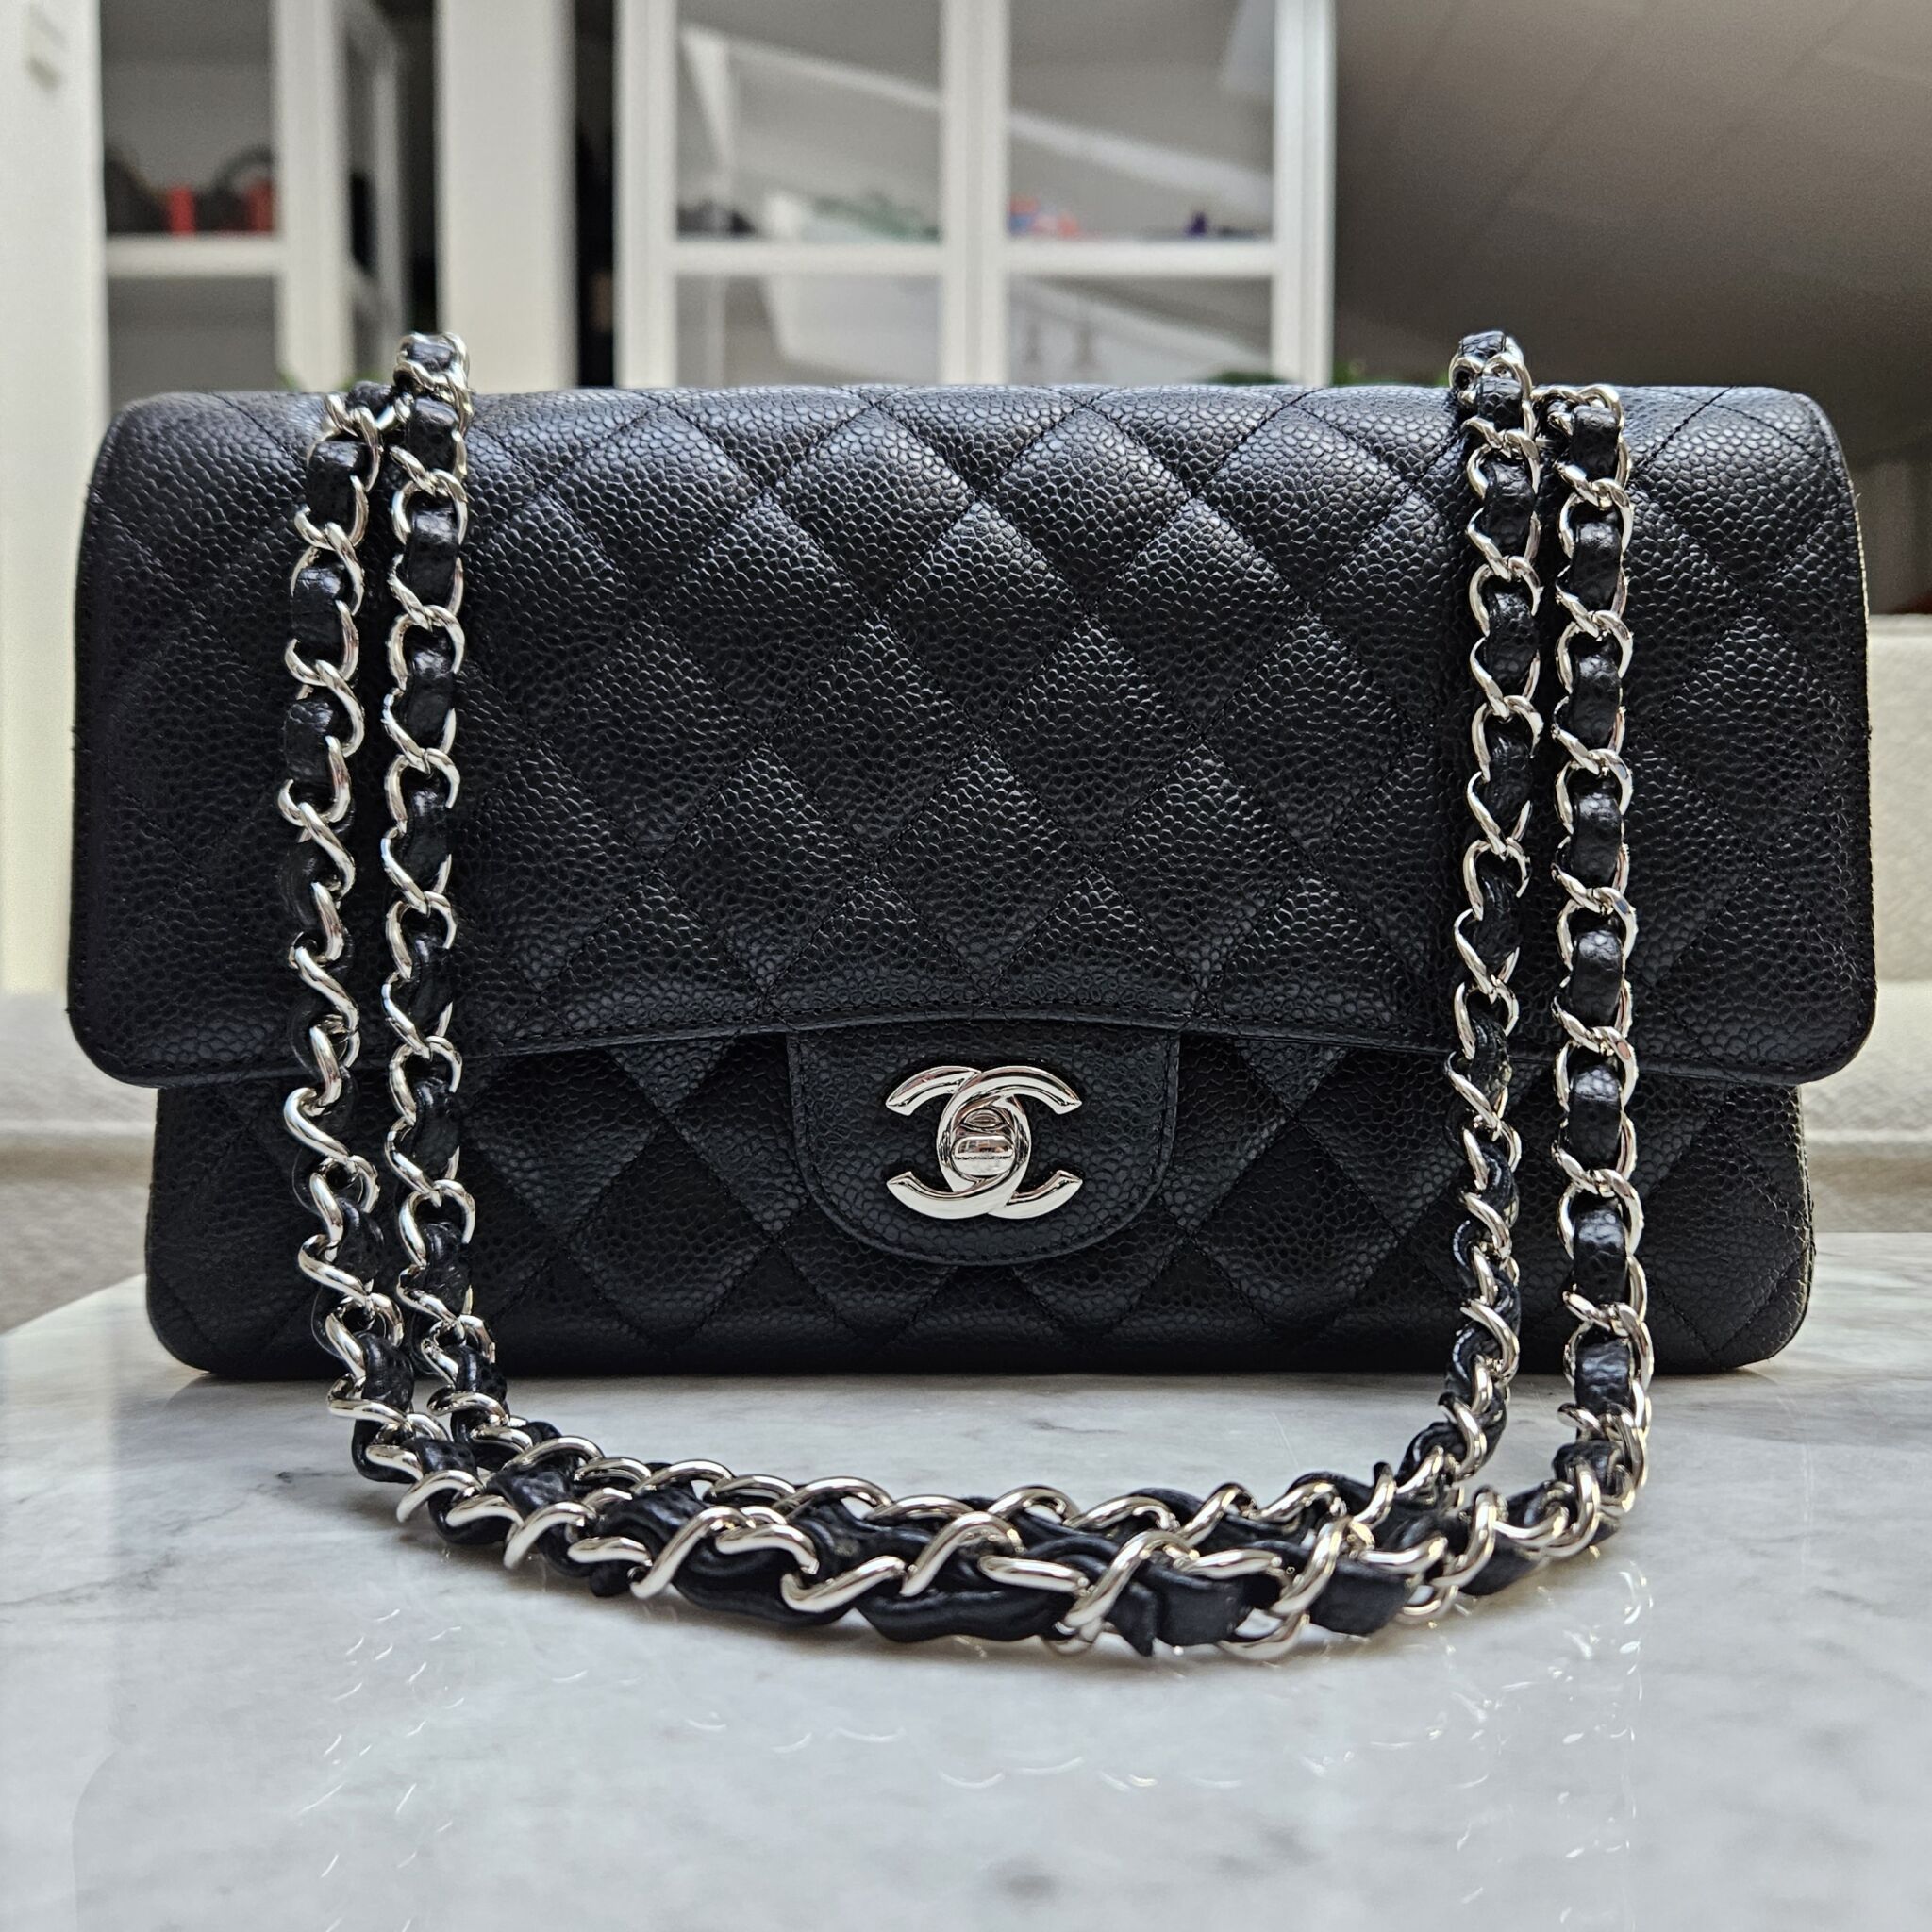 Chanel Timeless Medium 25cm double flap shoulder bag in black